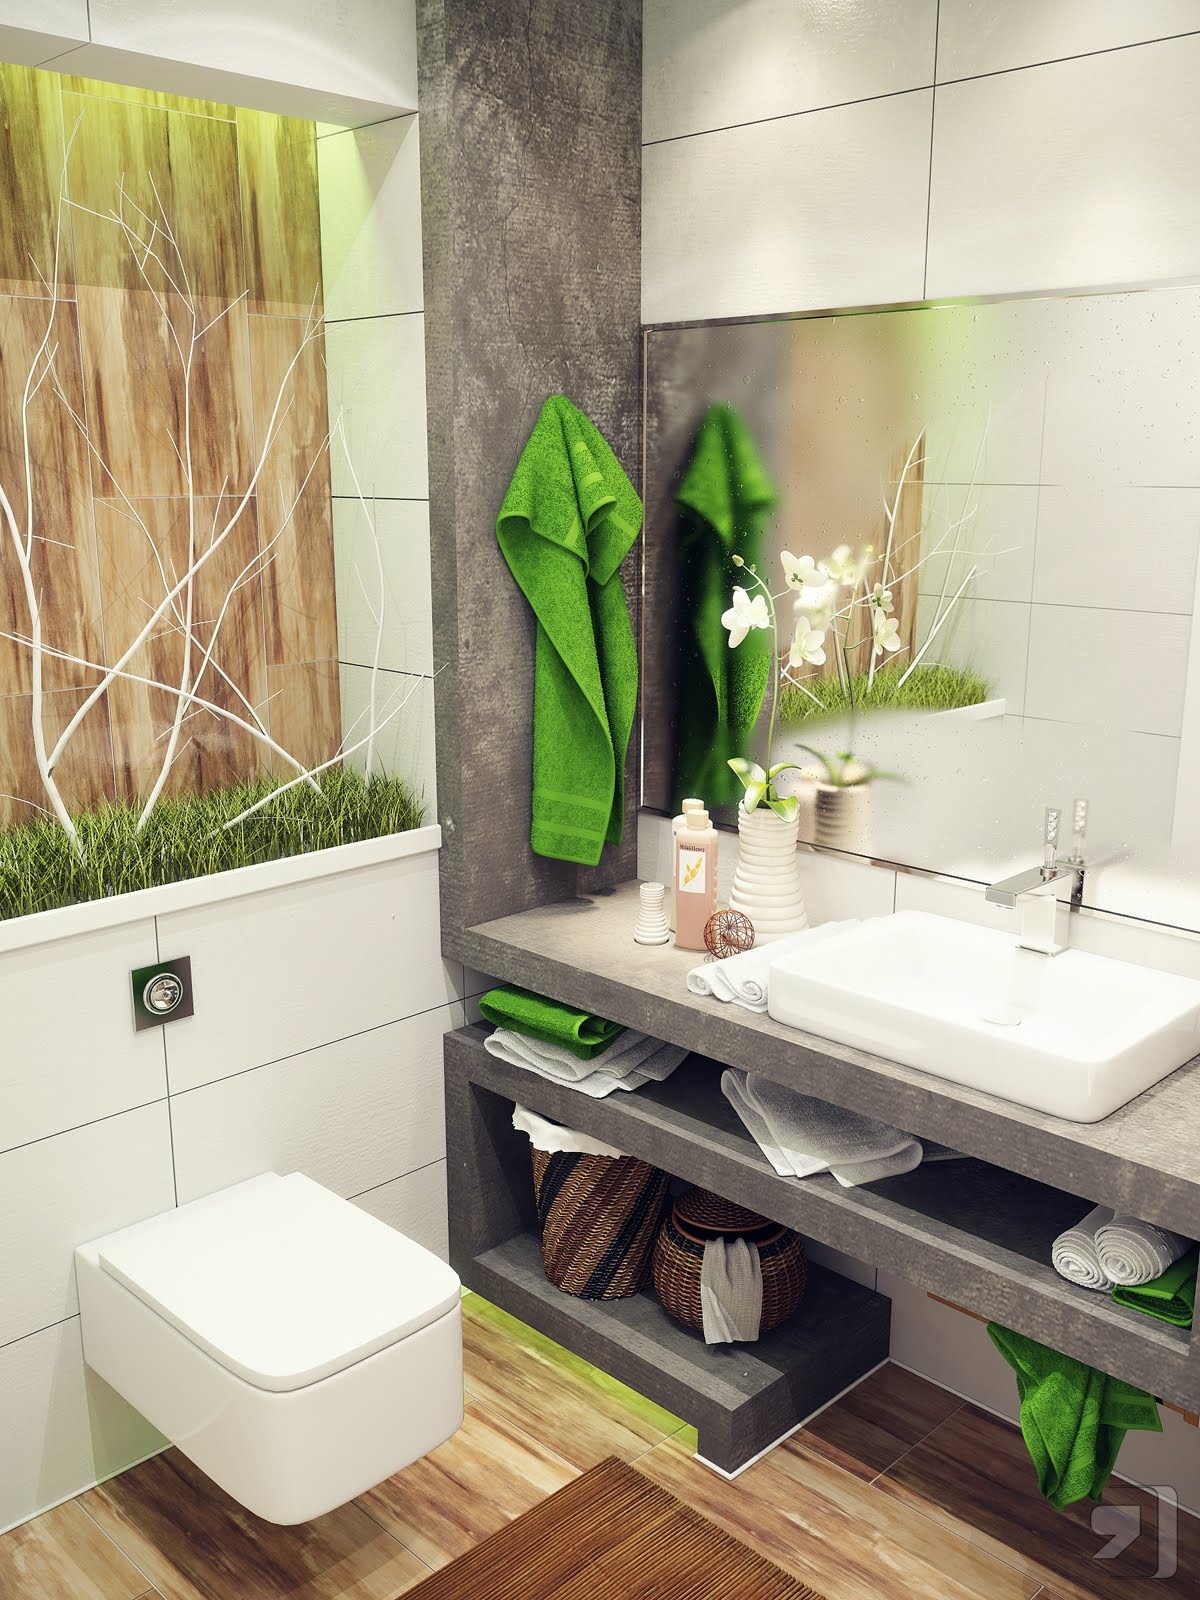 Deco Bilik Air Kecil (Small Bathroom Design) - DEKORUMAH.COM